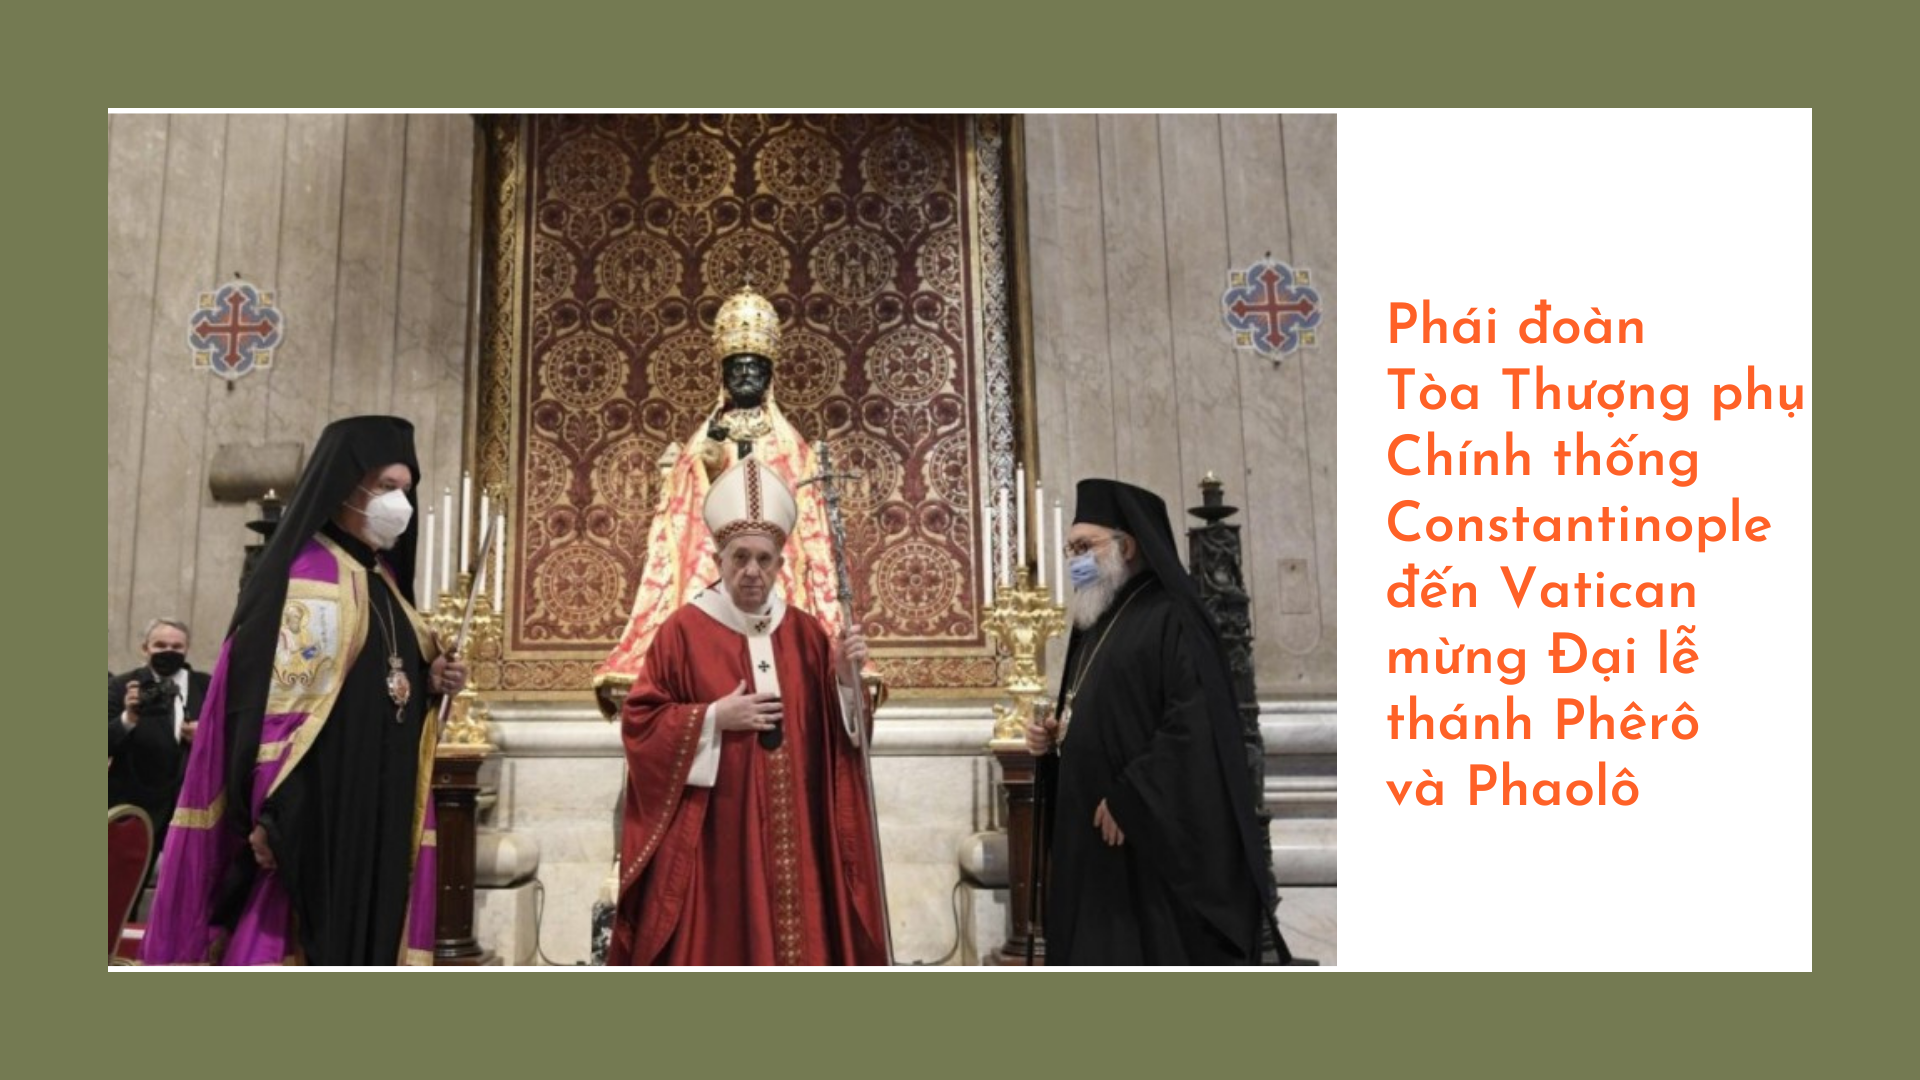 Phái đoàn Tòa Thượng phụ Chính thống Constantinople đến Vatican mừng Đại lễ thánh Phêrô và Phaolô